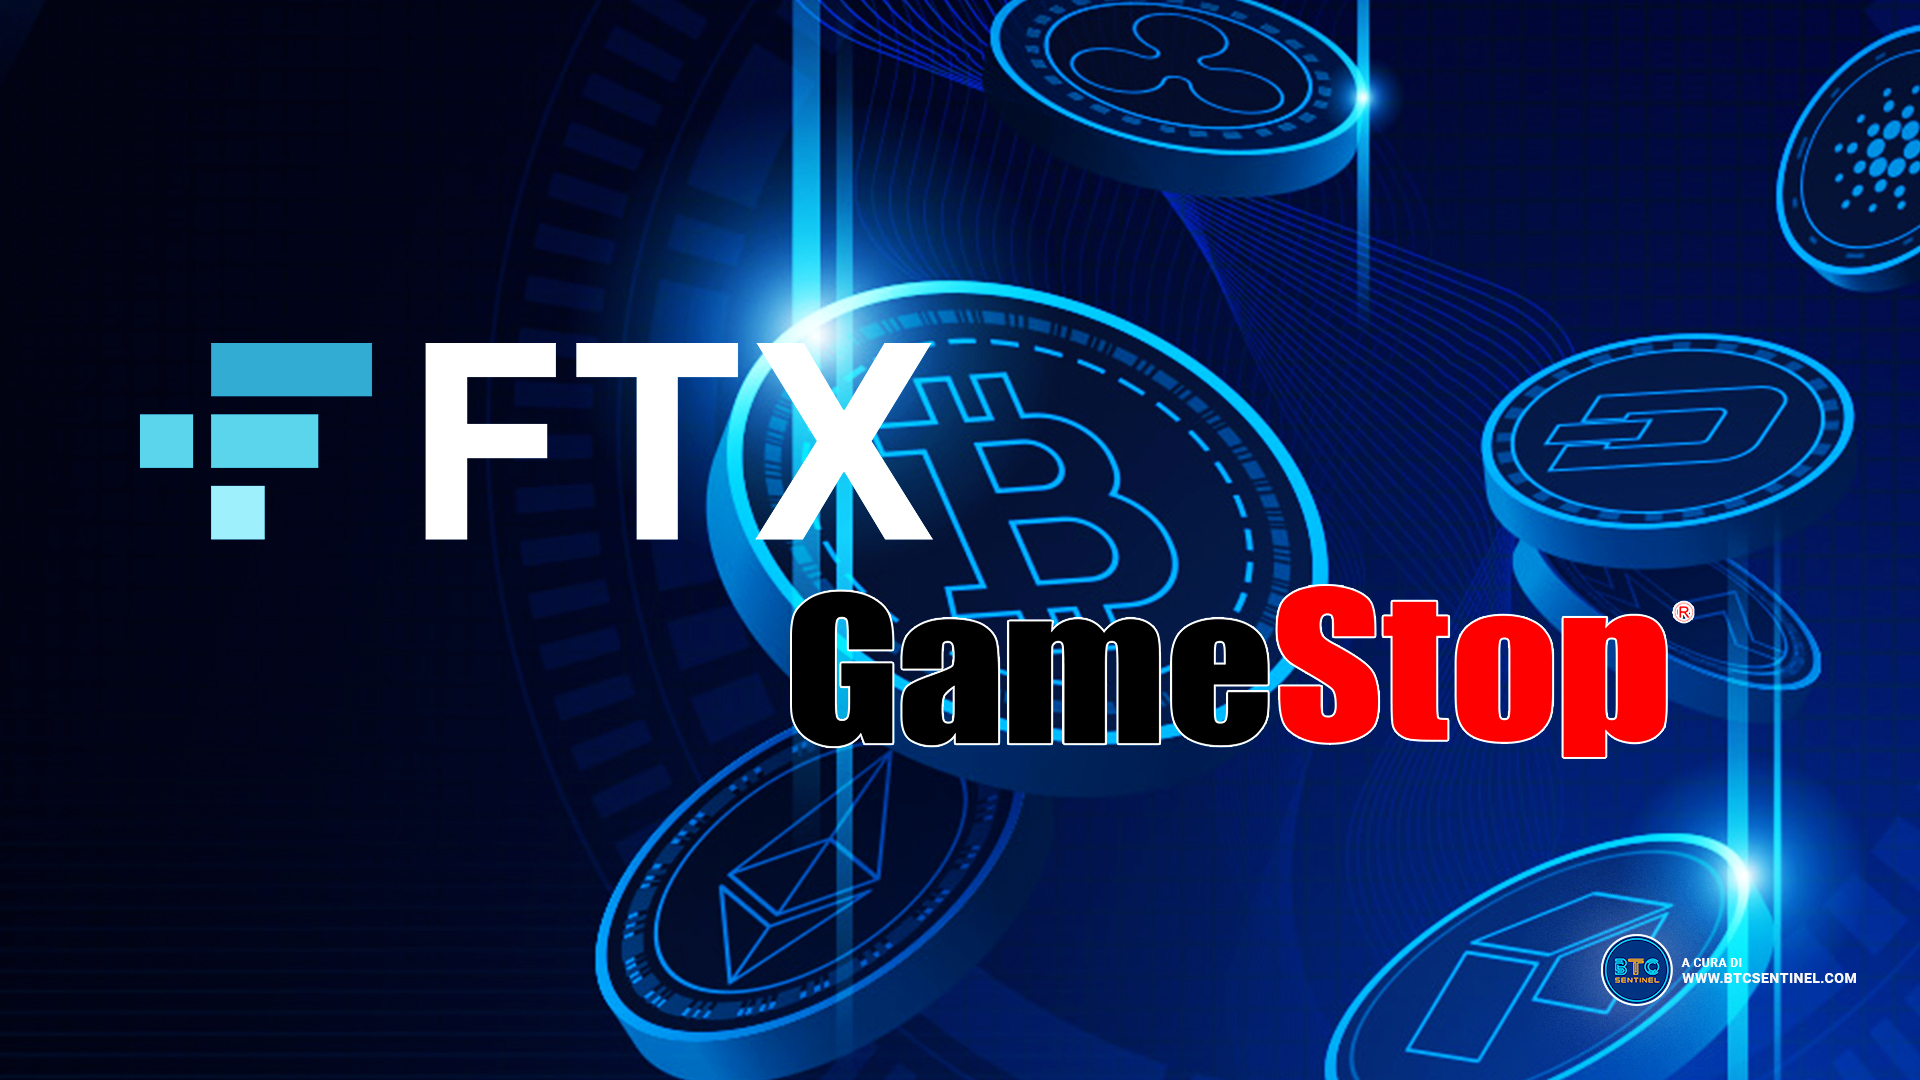 L’Exchange di criptovalute FTX annuncia la partnership con GameStop